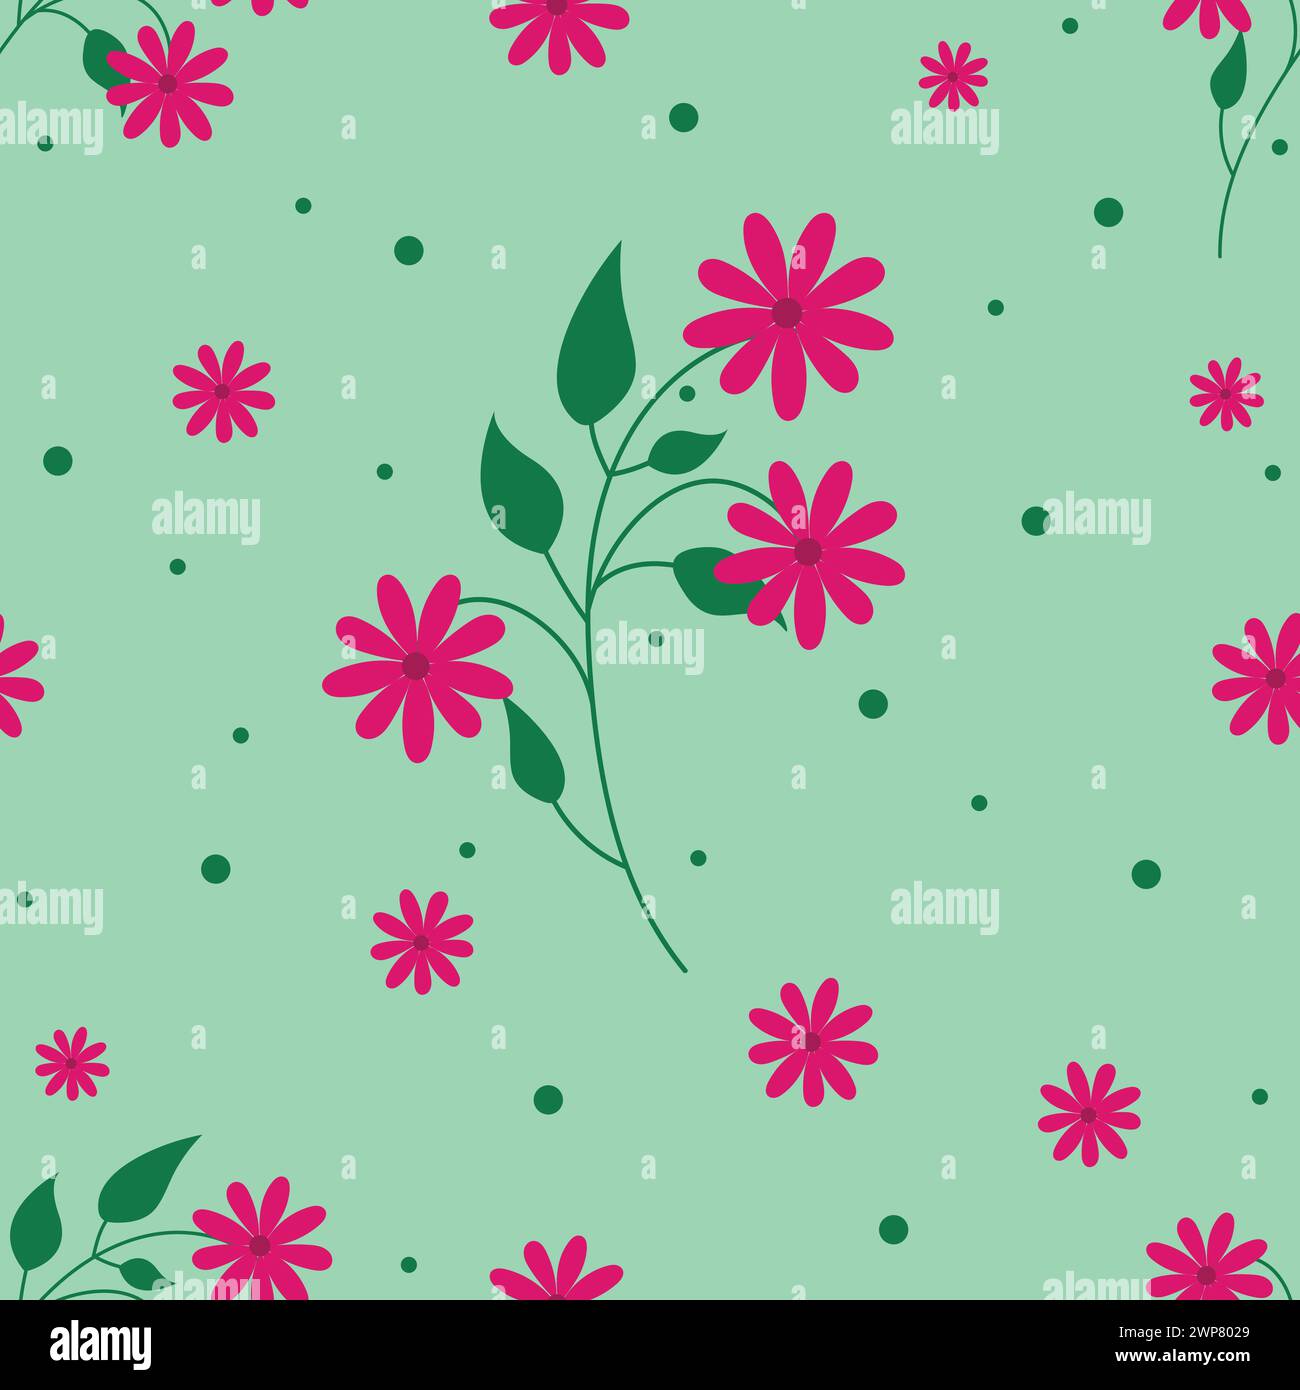 Wunderschönes nahtloses Blumenmuster auf grünem Hintergrund. Blumenmuster zum Drucken Stock Vektor